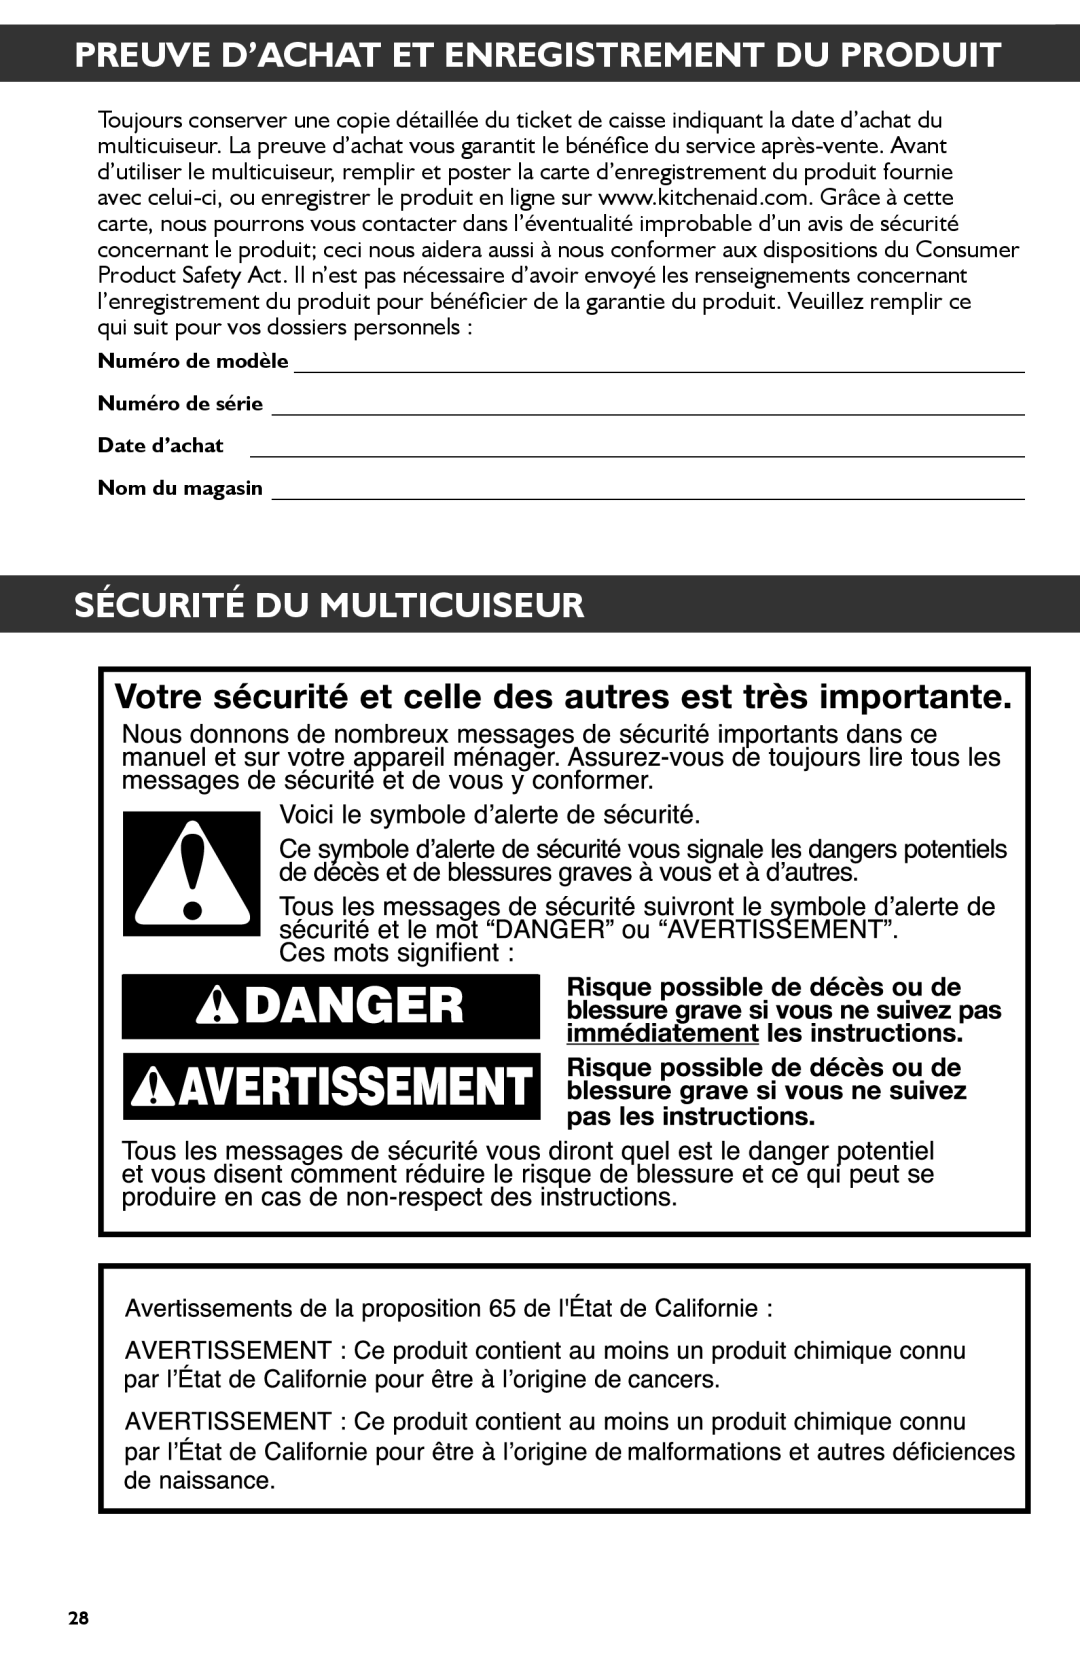 KitchenAid KMC4241 manual Preuve D’Achat Et Enregistrement Du Produit, Sécurité Du Multicuiseur 